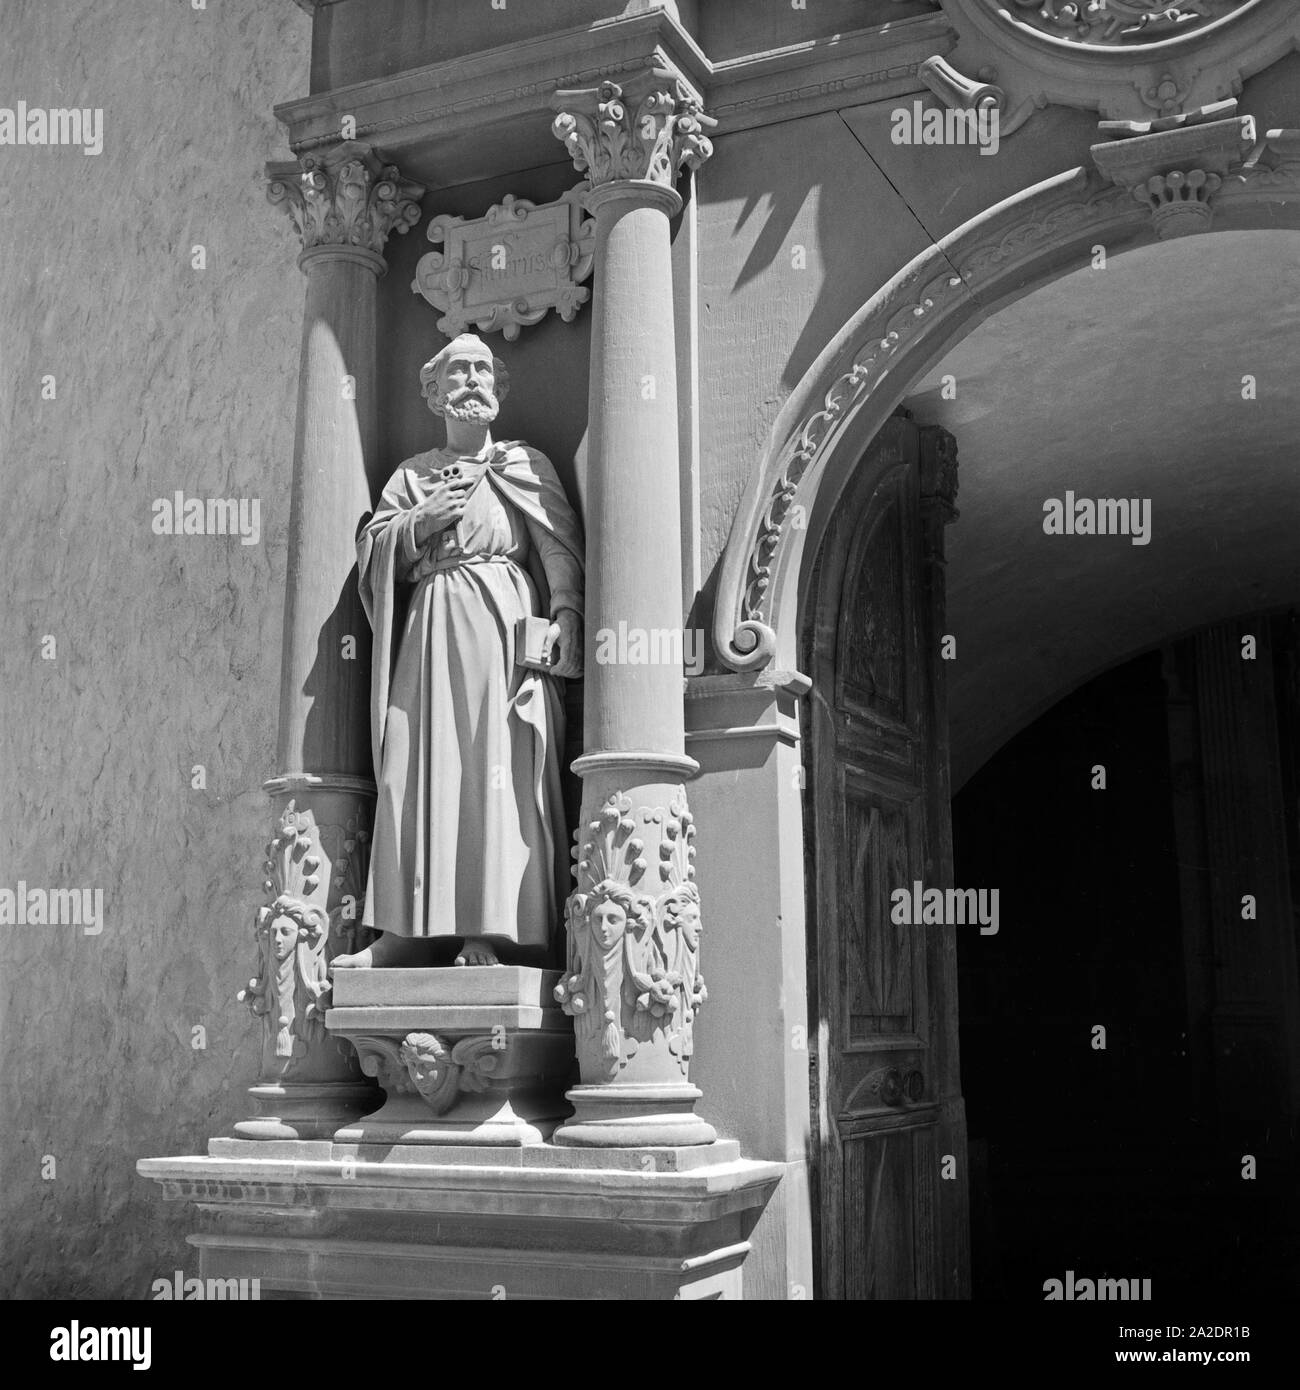 St. Petrus e am Eingang einer Kapelle auf der Festung Marienberg in Würzburg, Deutschland 1930er Jahre. St. Peter am Eingang der Kapelle auf der Festung Marienberg in Würzburg, Deutschland 1930. Stockfoto